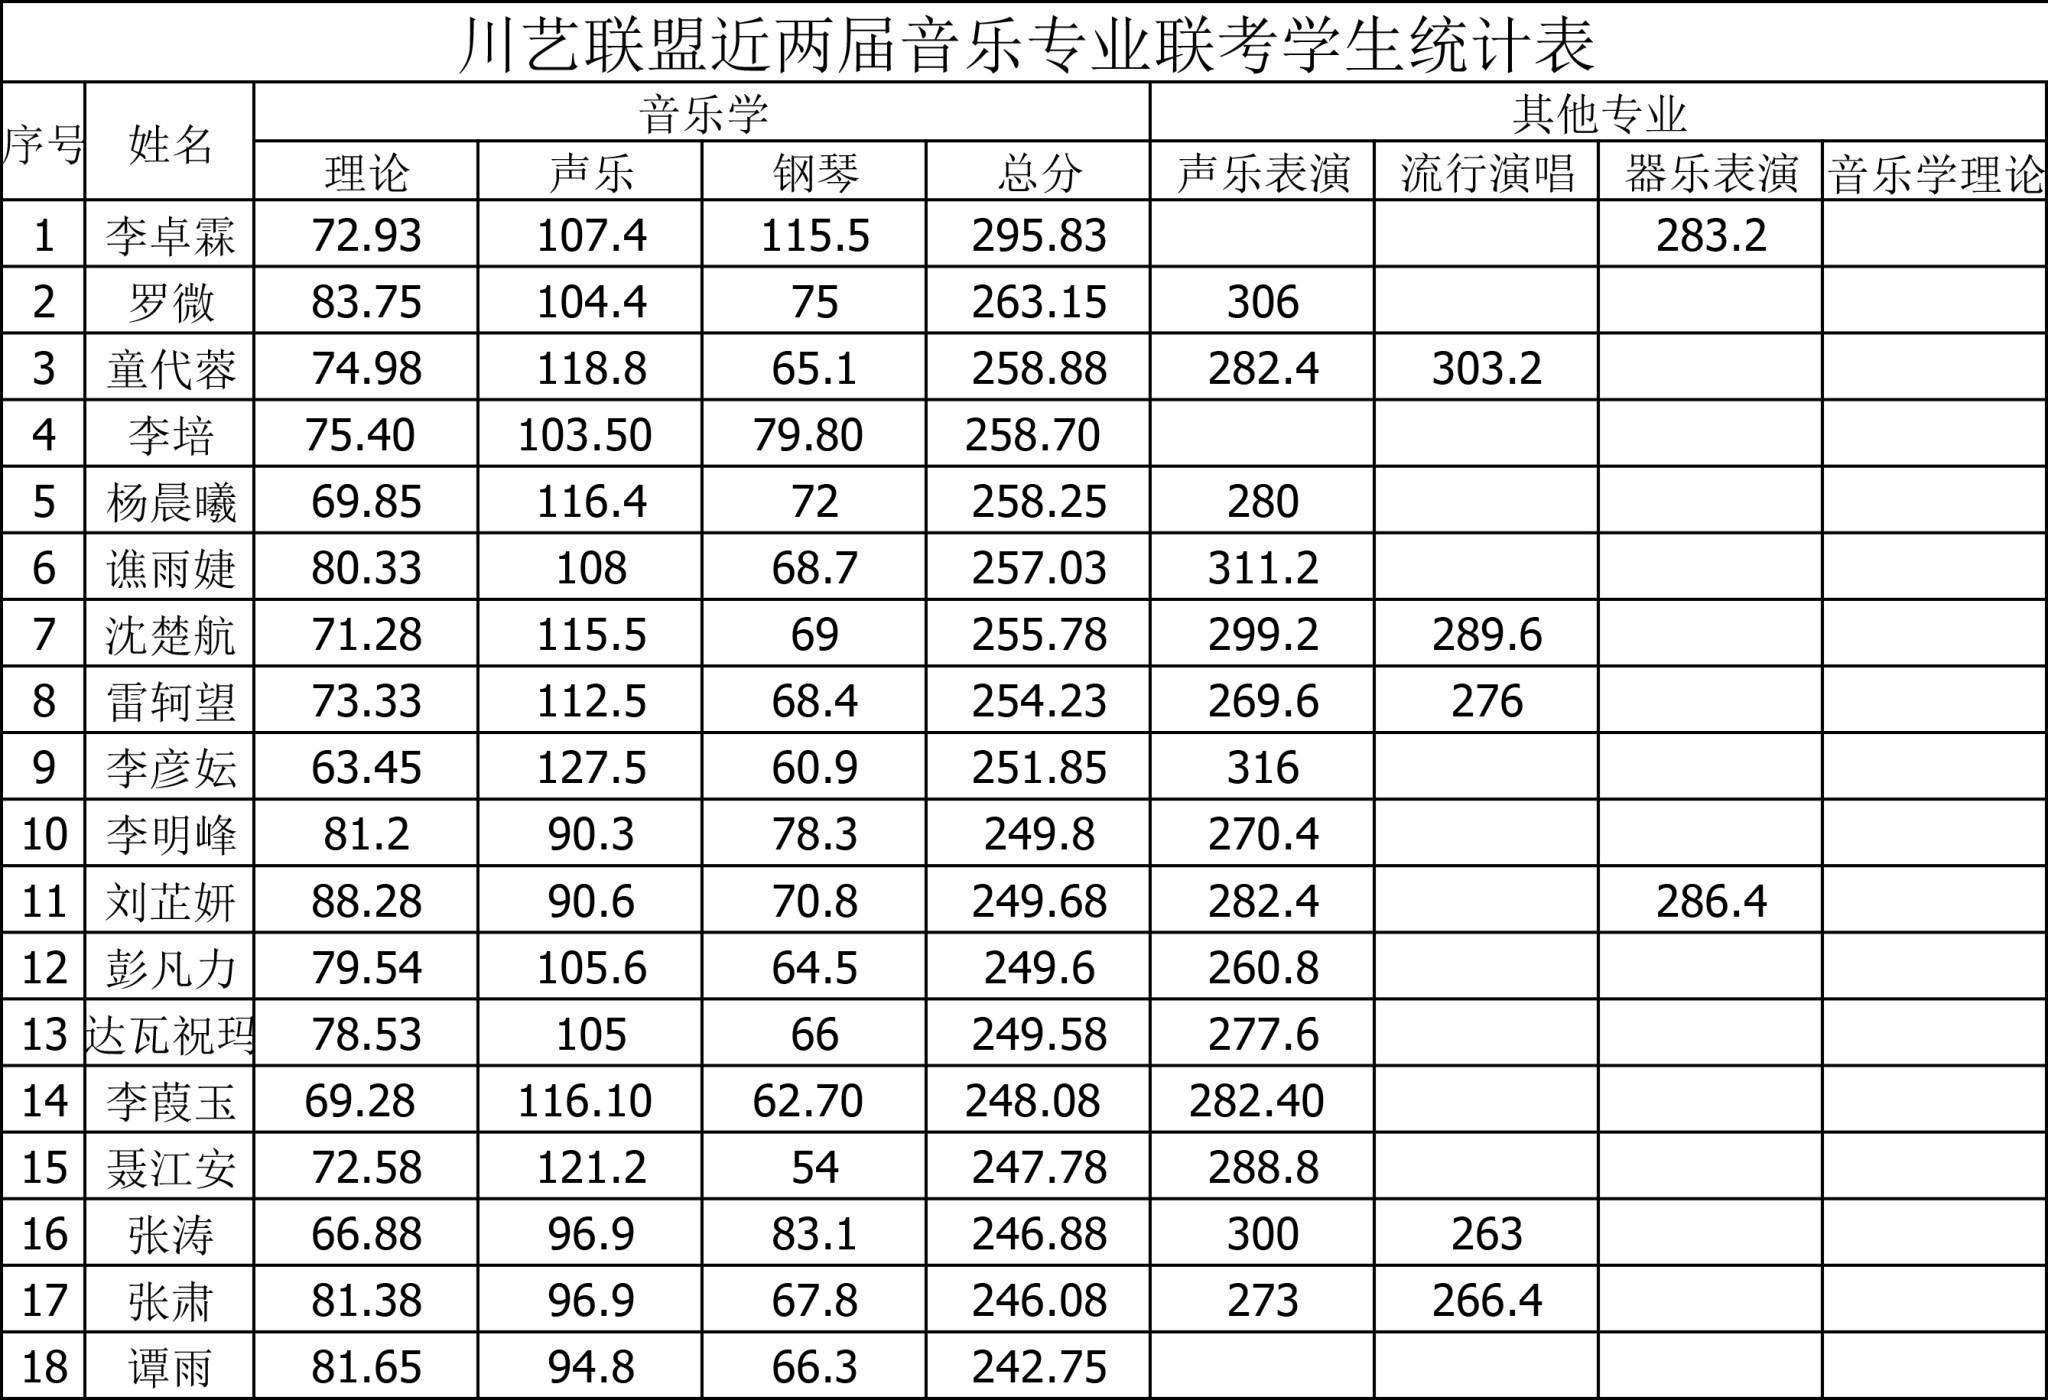 川艺联盟近两届音乐专业联考学生统计表1.doc-1